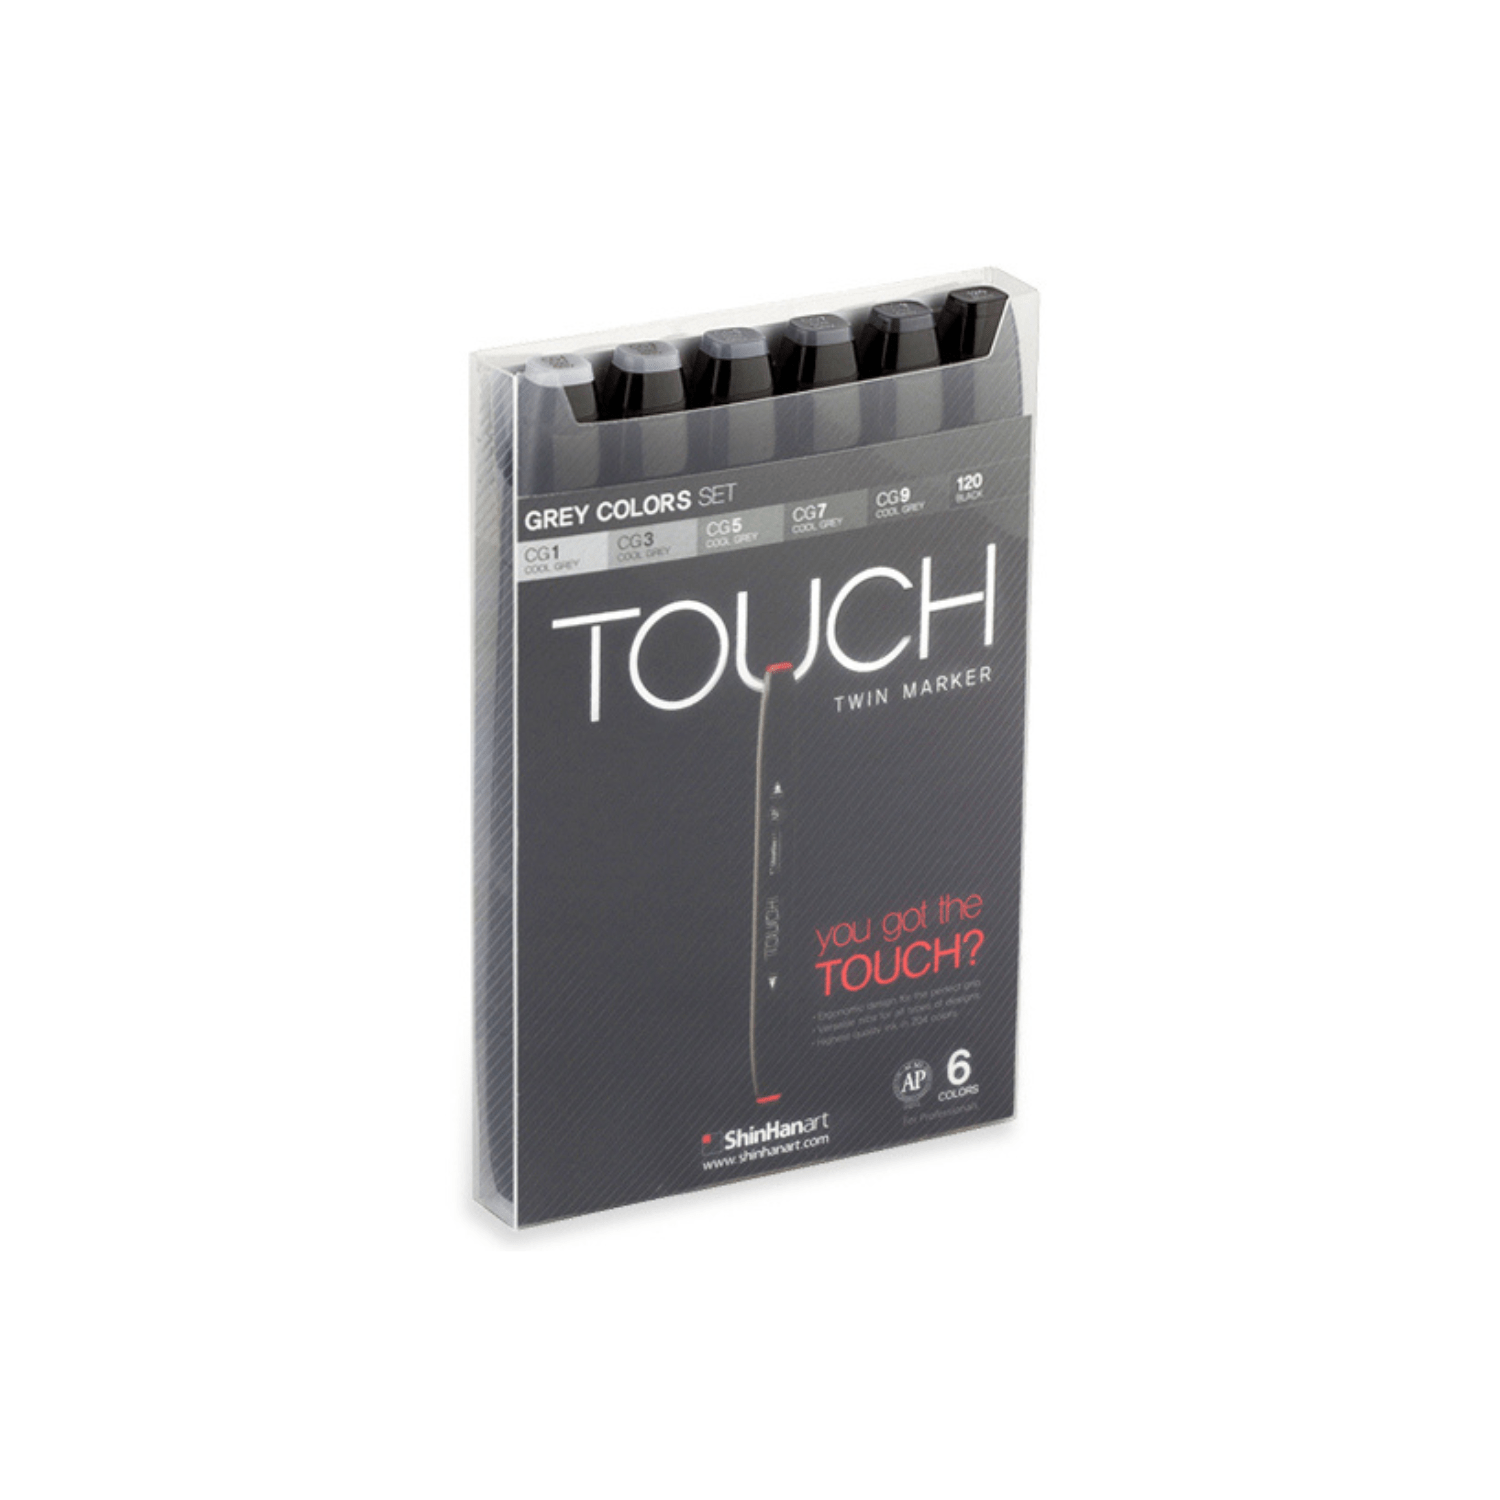 ShinHanart Tegneartikler Touch Twin Markers 6 stk. Grey Colors sæt